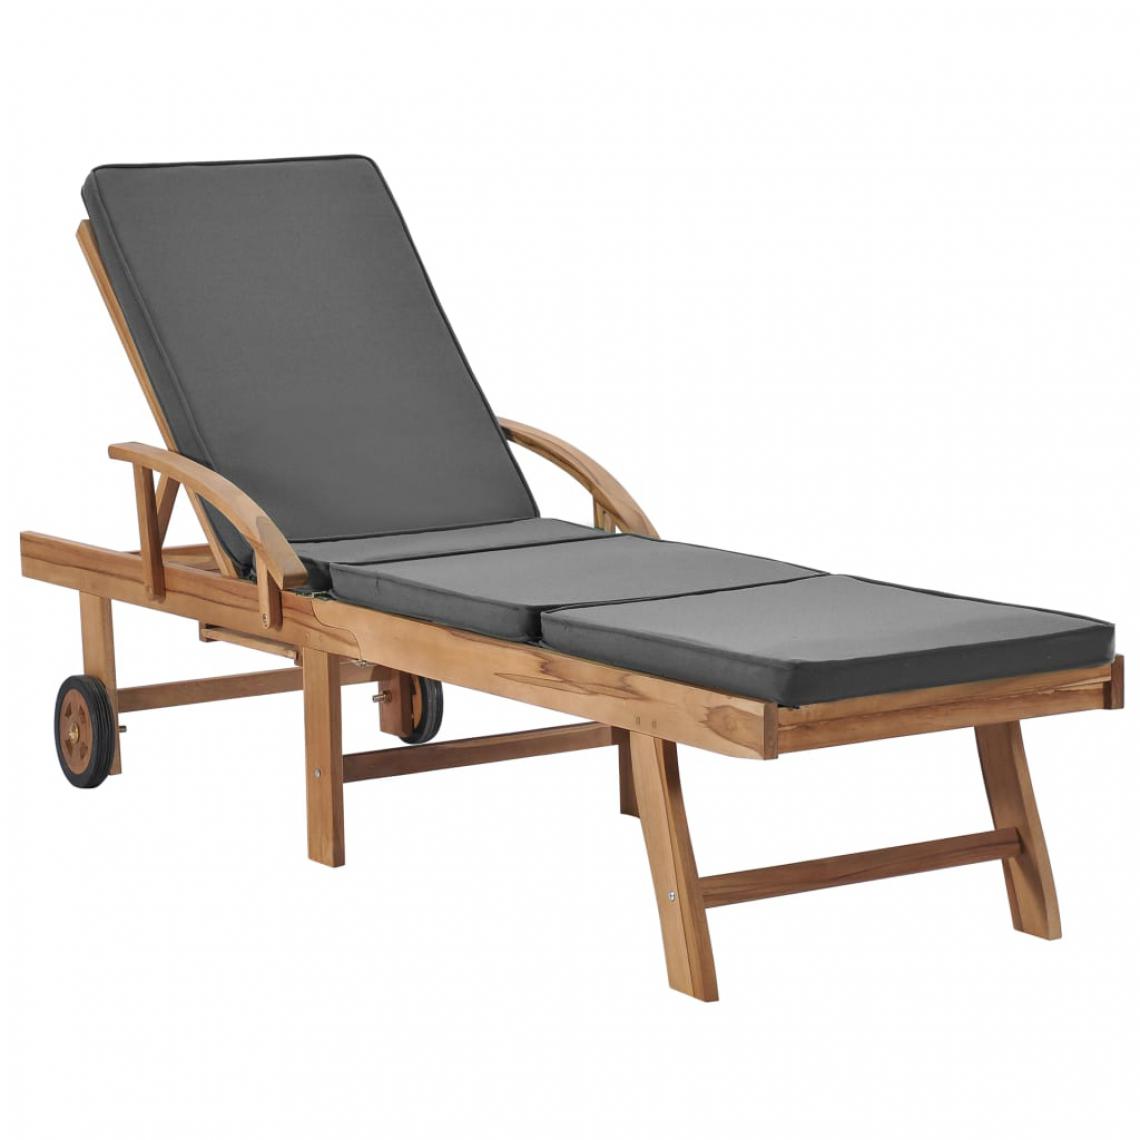 Chunhelife - Chaise longue avec coussin Bois de teck solide Gris foncé - Transats, chaises longues